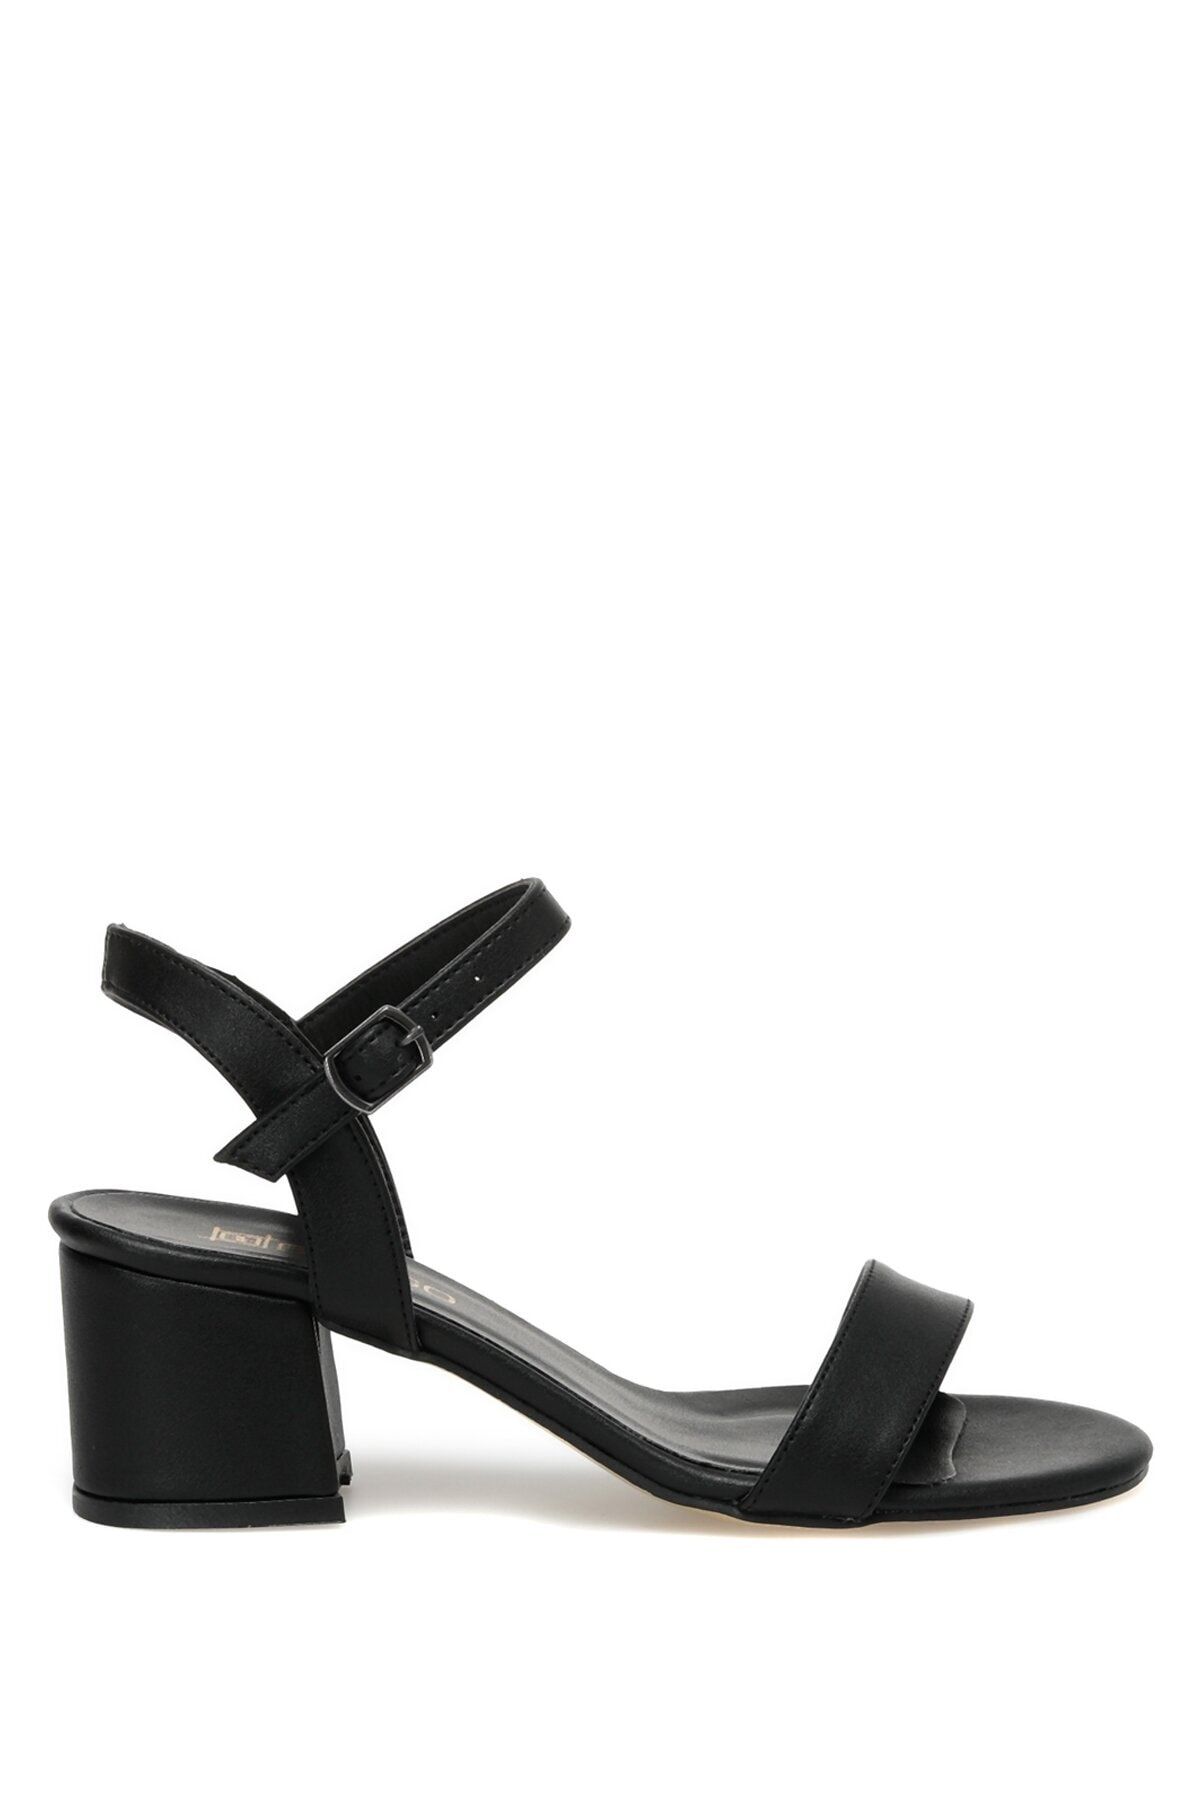 Butigo Jony 3fx Siyah Kadın Topuklu Sandalet